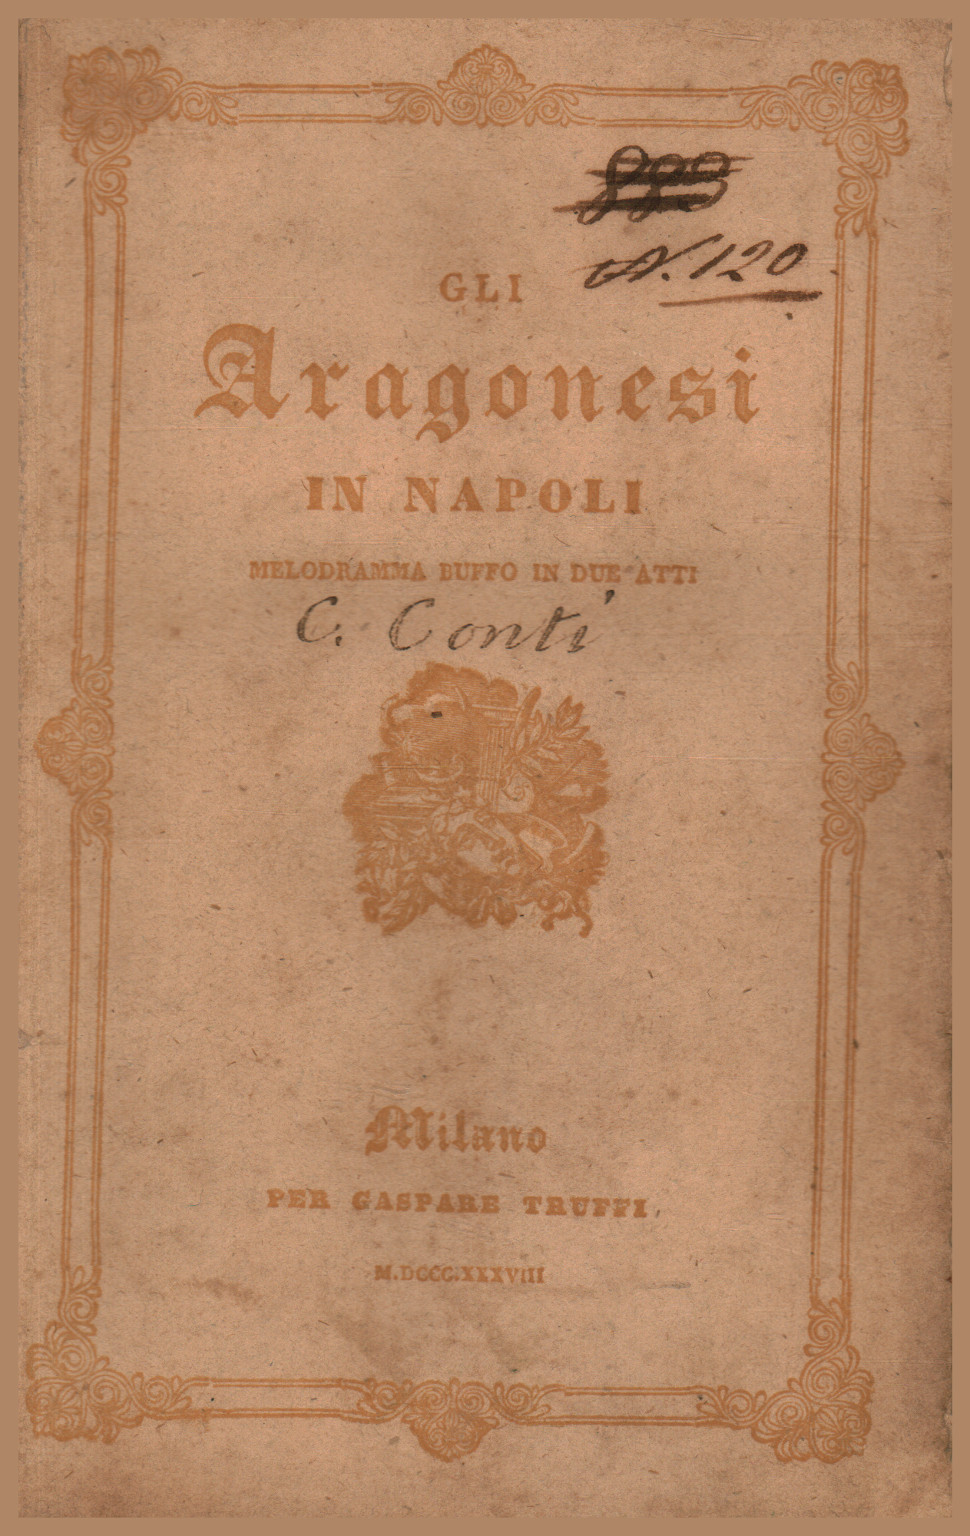 Gli Aragonesi in Napoli, melodramma buffo in due atti da rappresentar